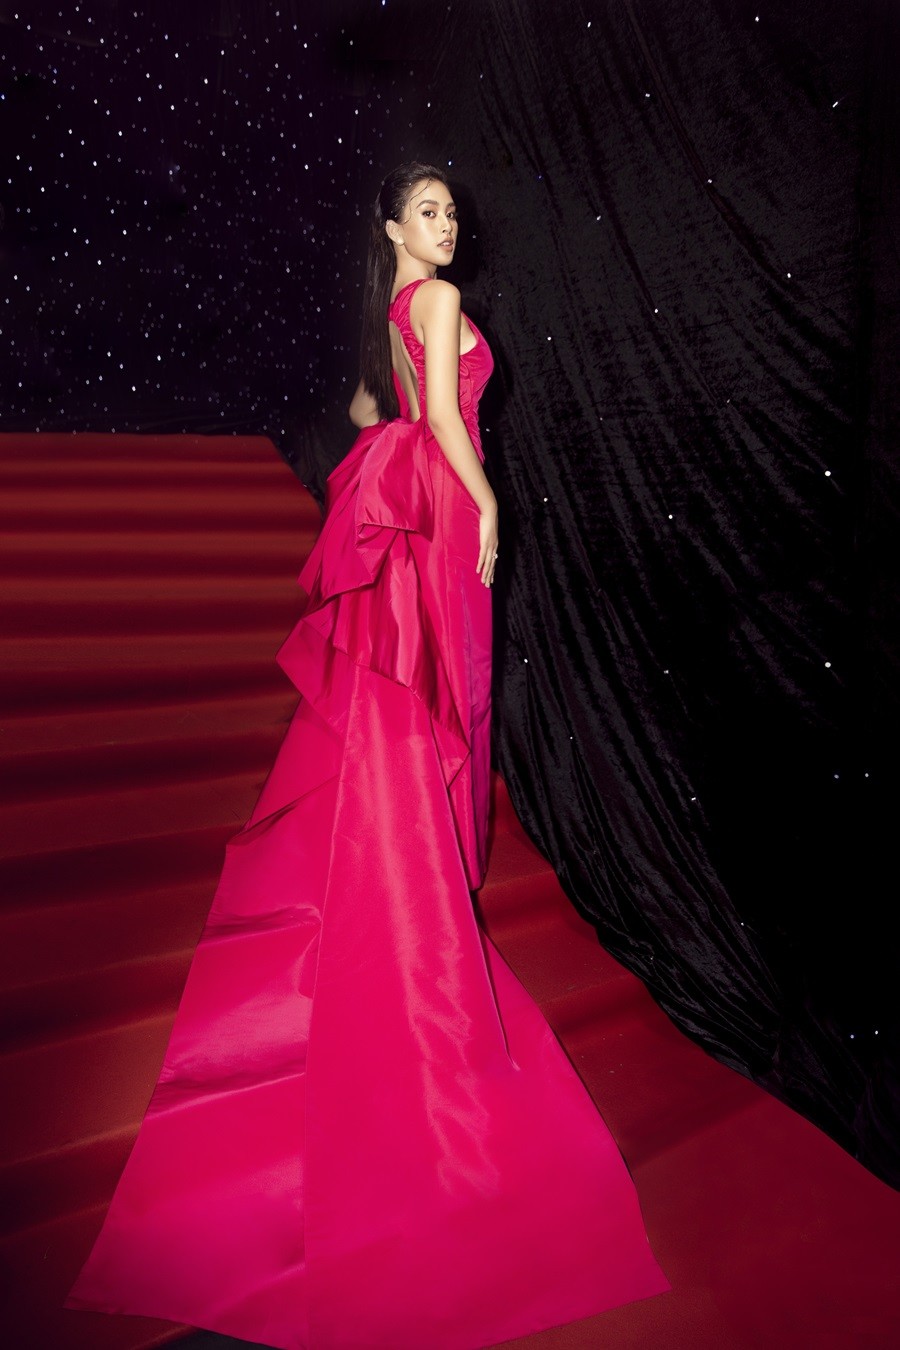 Hoa hậu Tiểu Vy nổi bật với thiết kế váy dạ hội bằng vải taffeta ôm sát, phần đuôi cá xếp tầng nữ tính nhưng sẽ chẳng có gì đặc biệt nếu thiết kế này không phải là hồng neon.